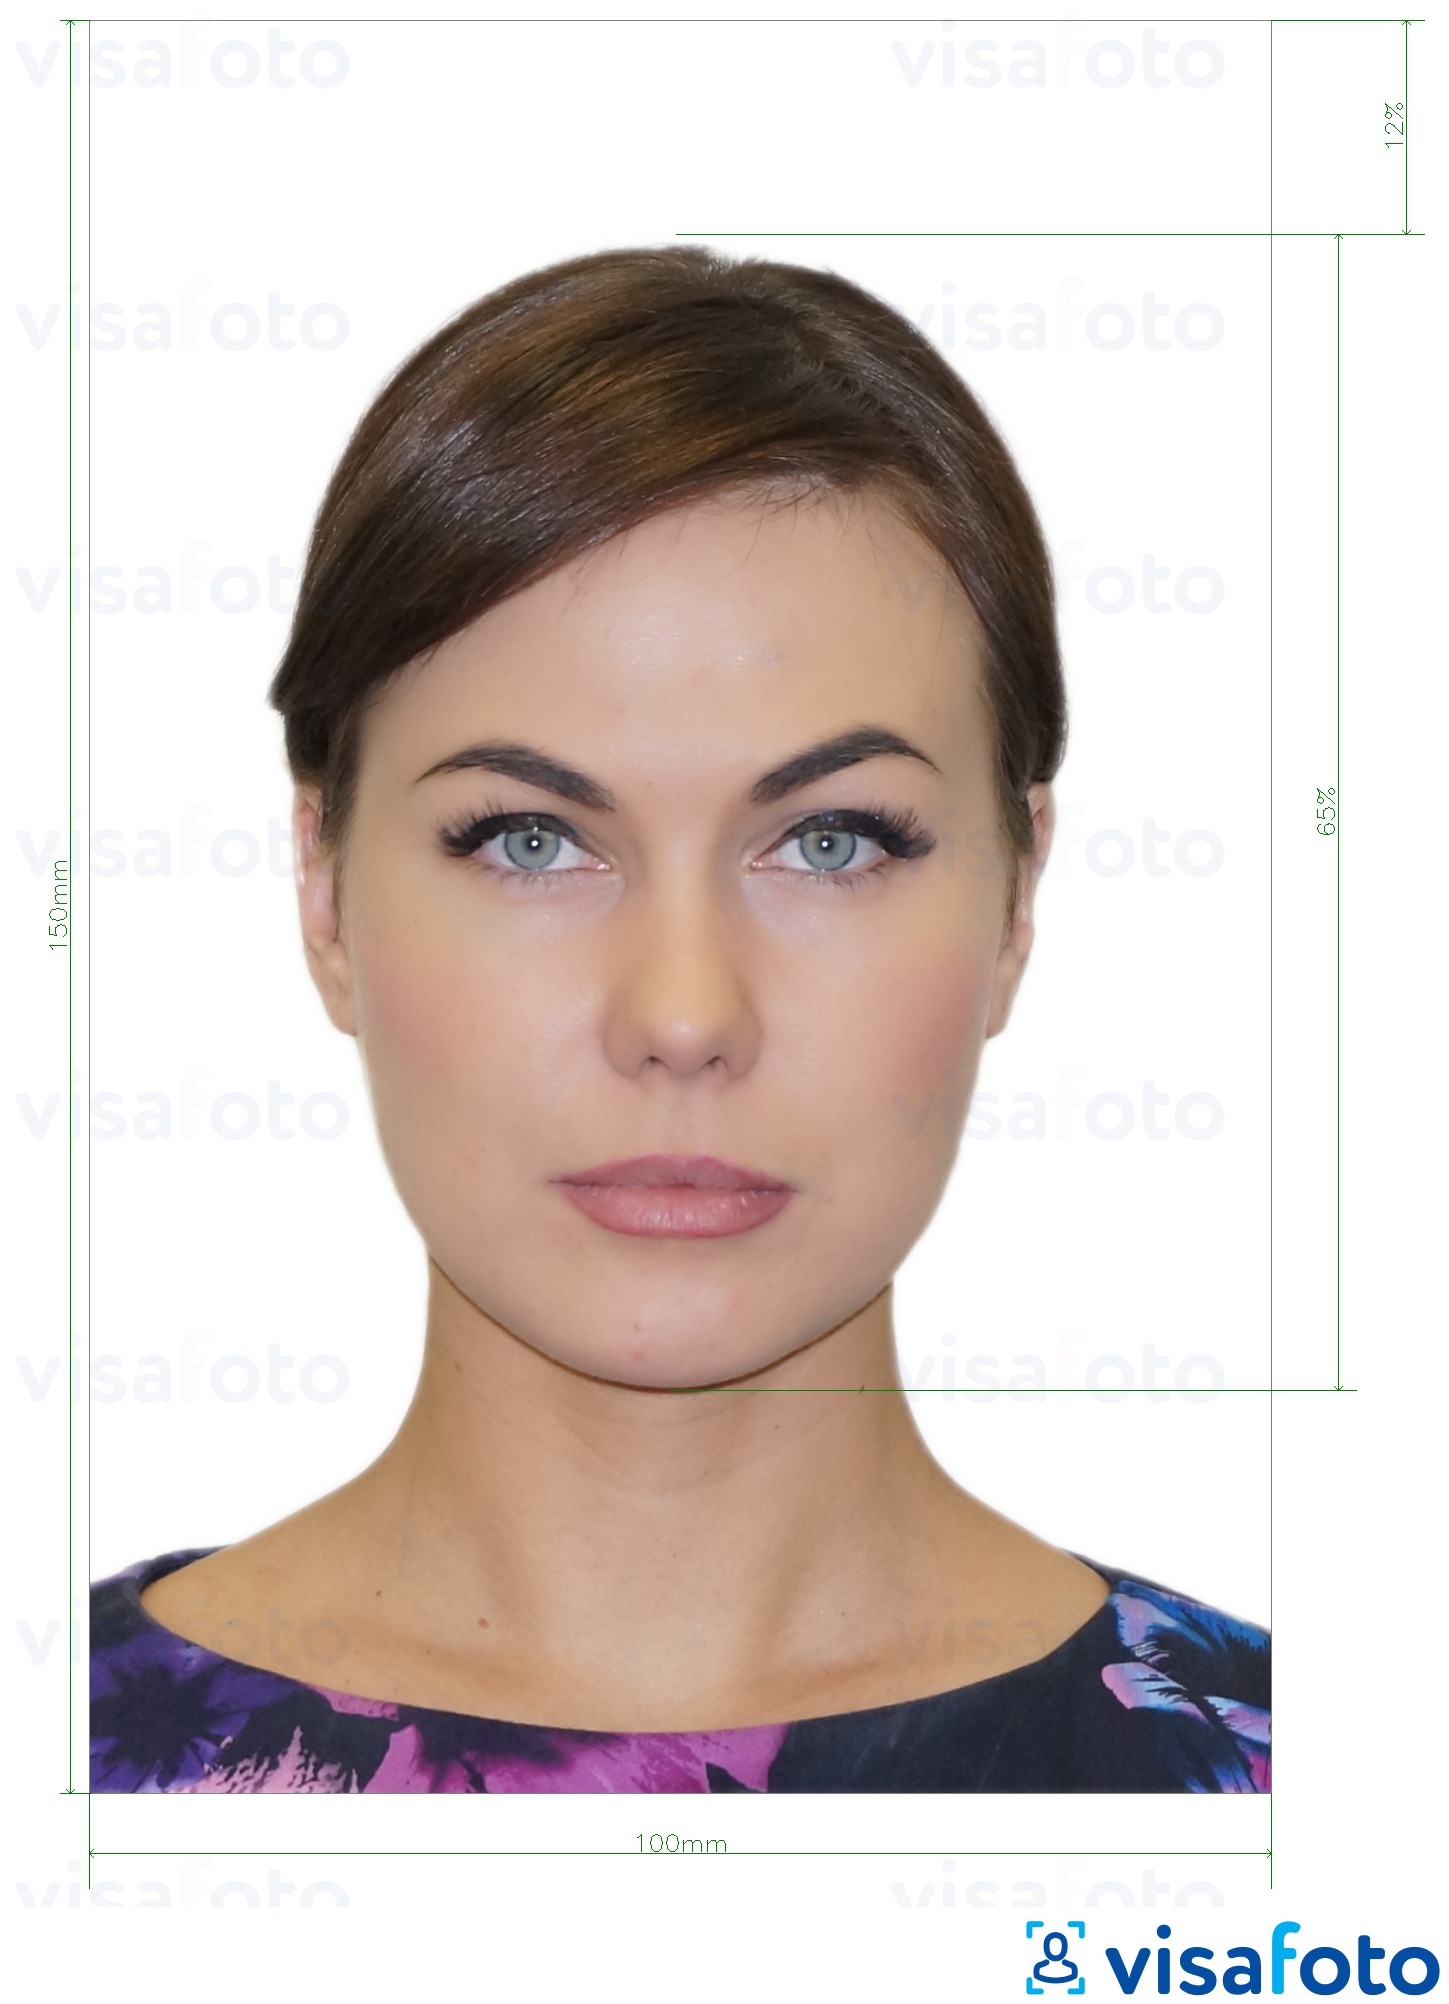 Przykład zdjęcia dla Mołdawski dowód tożsamości (Buletin de identitate) 10x15 cm z podaniem dokładnego rozmiaru.